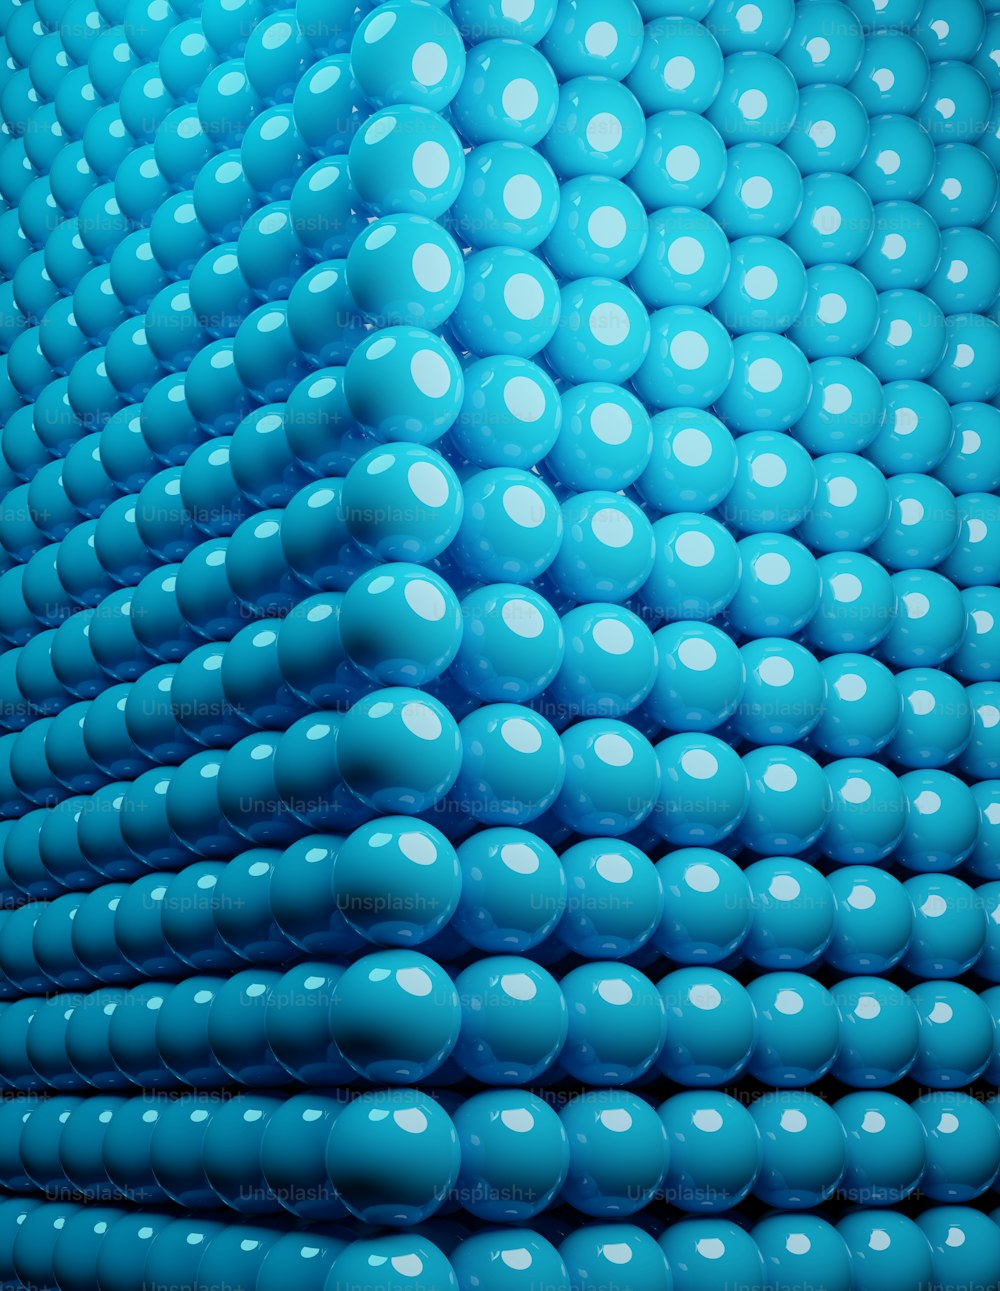 Un gran grupo de bolas azules en forma de pirámide